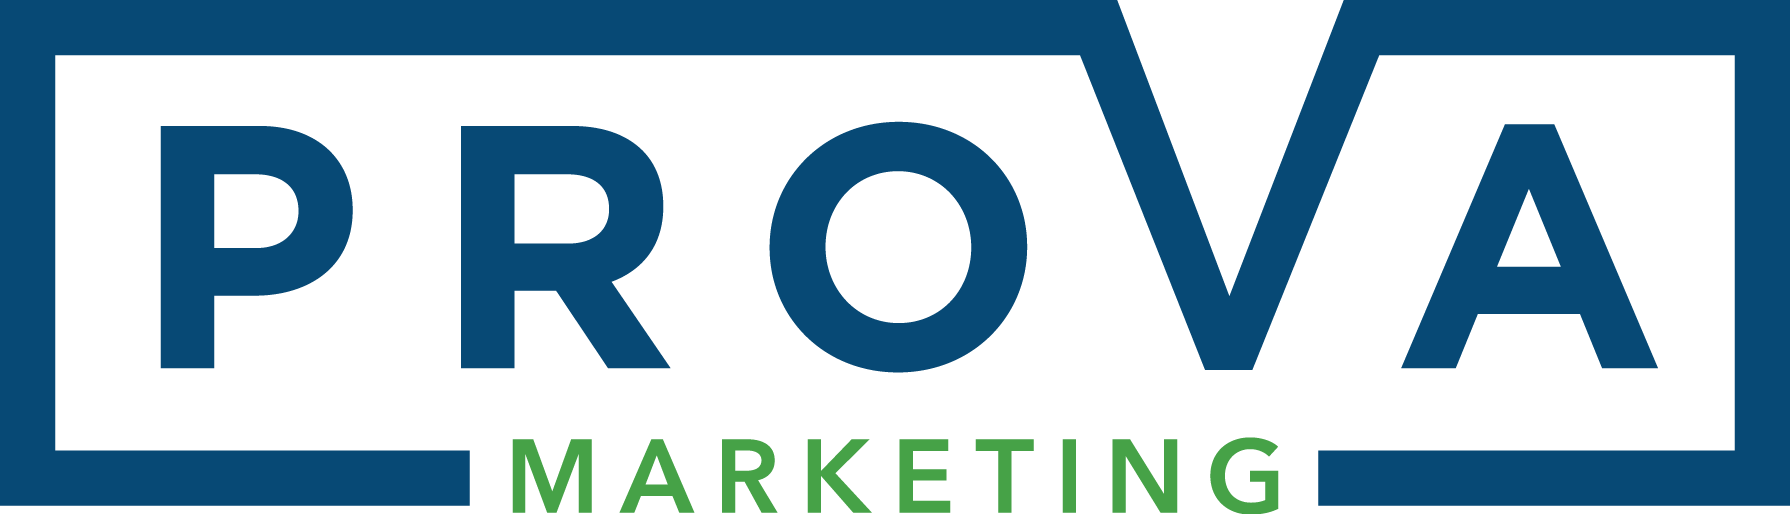 Prova_Marketing_Logo